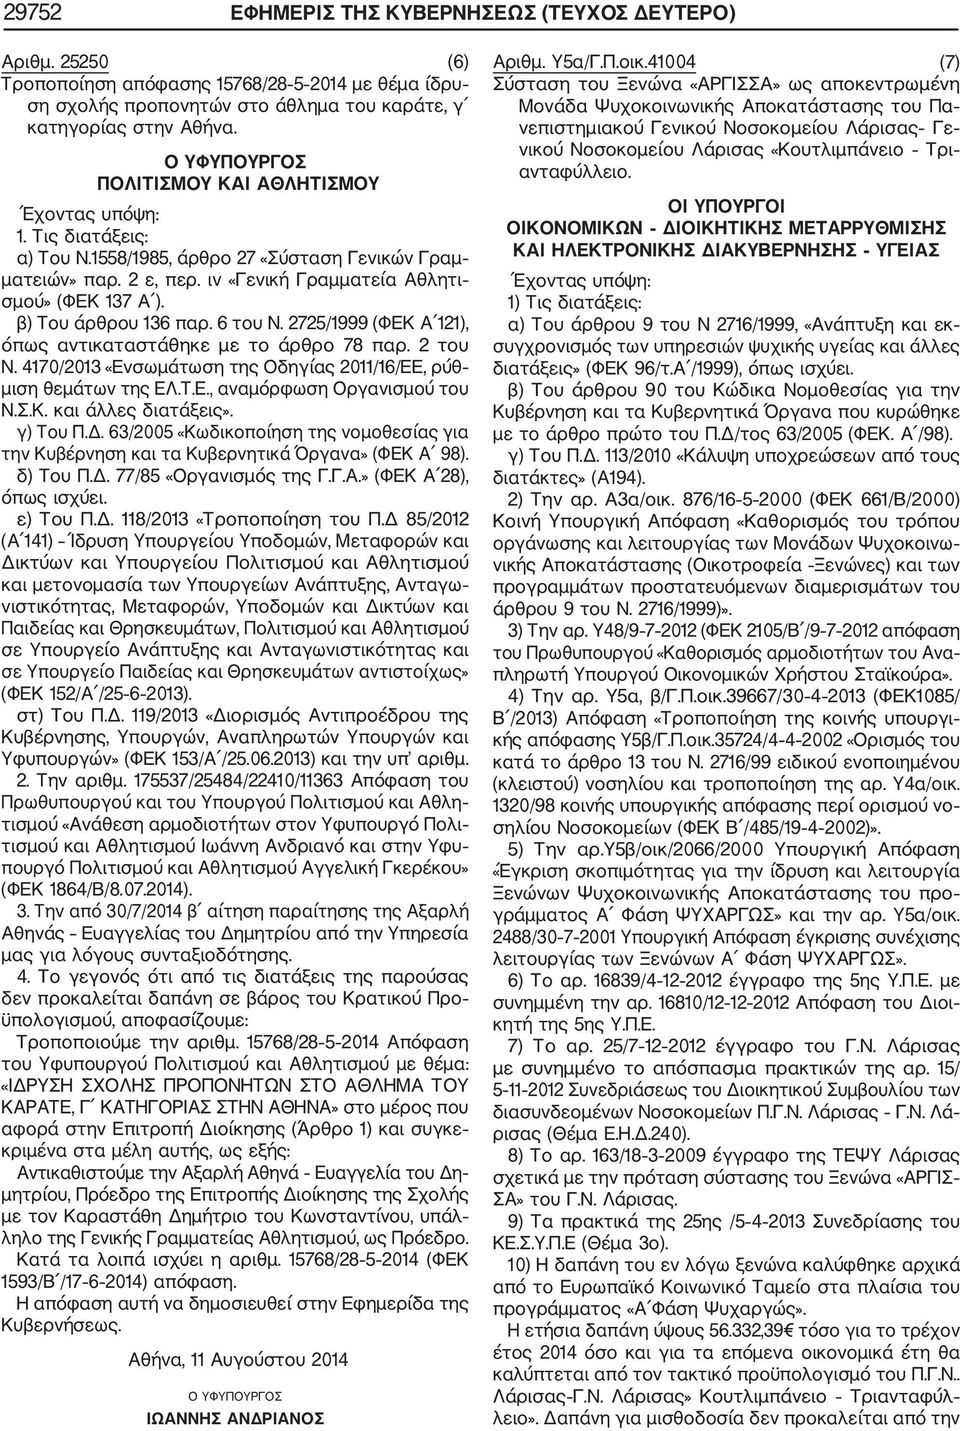 2725/1999 (ΦΕΚ Α 121), όπως αντικαταστάθηκε με το άρθρο 78 παρ. 2 του Ν. 4170/2013 «Ενσωμάτωση της Οδηγίας 2011/16/ΕΕ, ρύθ μιση θεμάτων της ΕΛ.Τ.Ε., αναμόρφωση Οργανισμού του Ν.Σ.Κ. και άλλες διατάξεις».